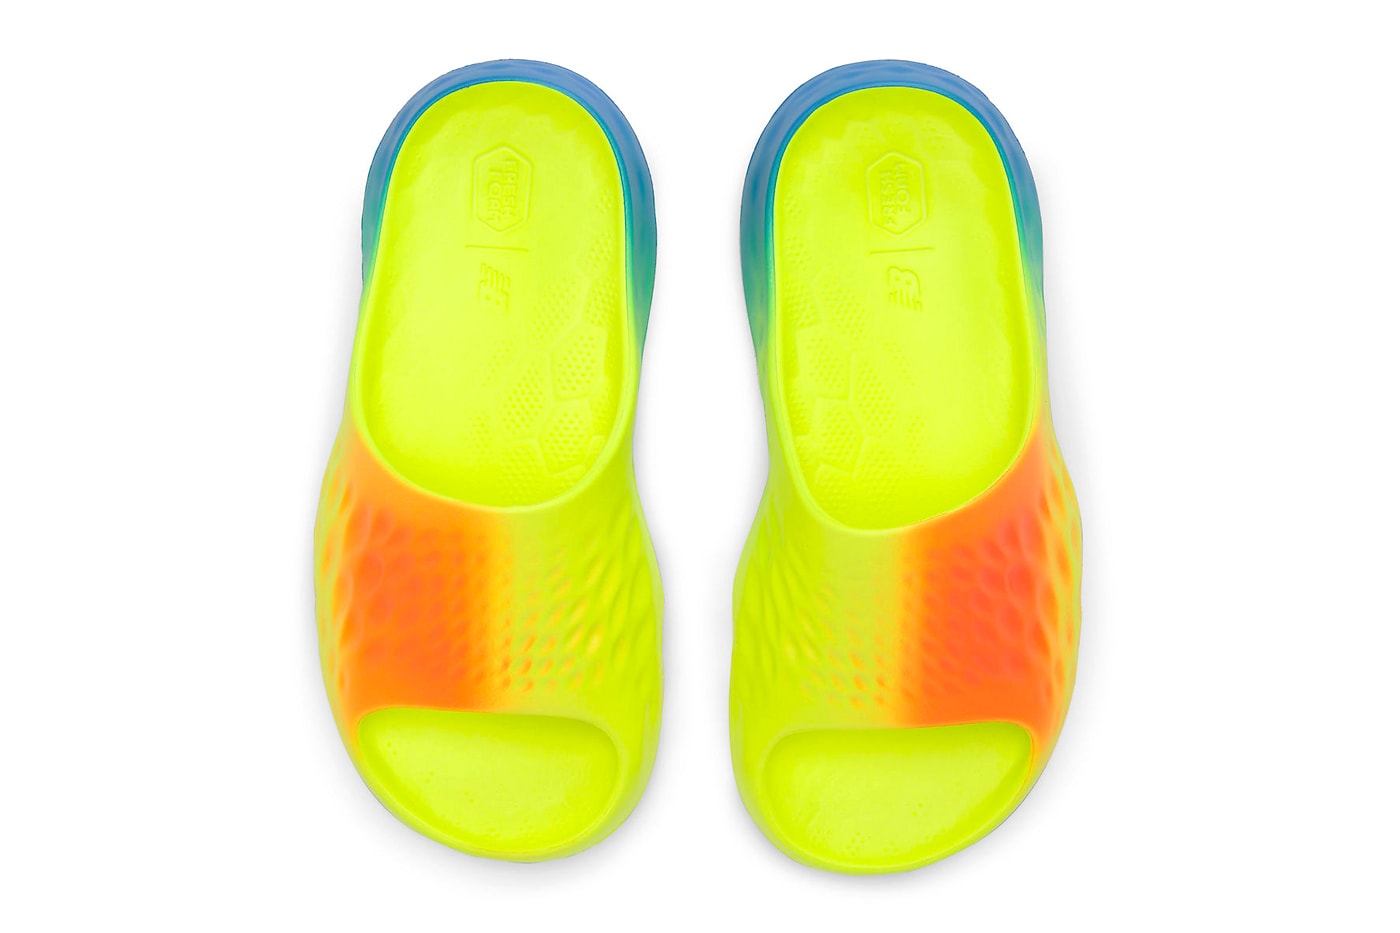 ニューバランスから新型スライドサンダル フレッシュフォーム マーシンが登場 New Balance fresh foam Introduces the MRSHN Slide "Multi-Color" Bright Lapis/Neon Dragonfly-Hi-Lite SUFHUPG3 release info